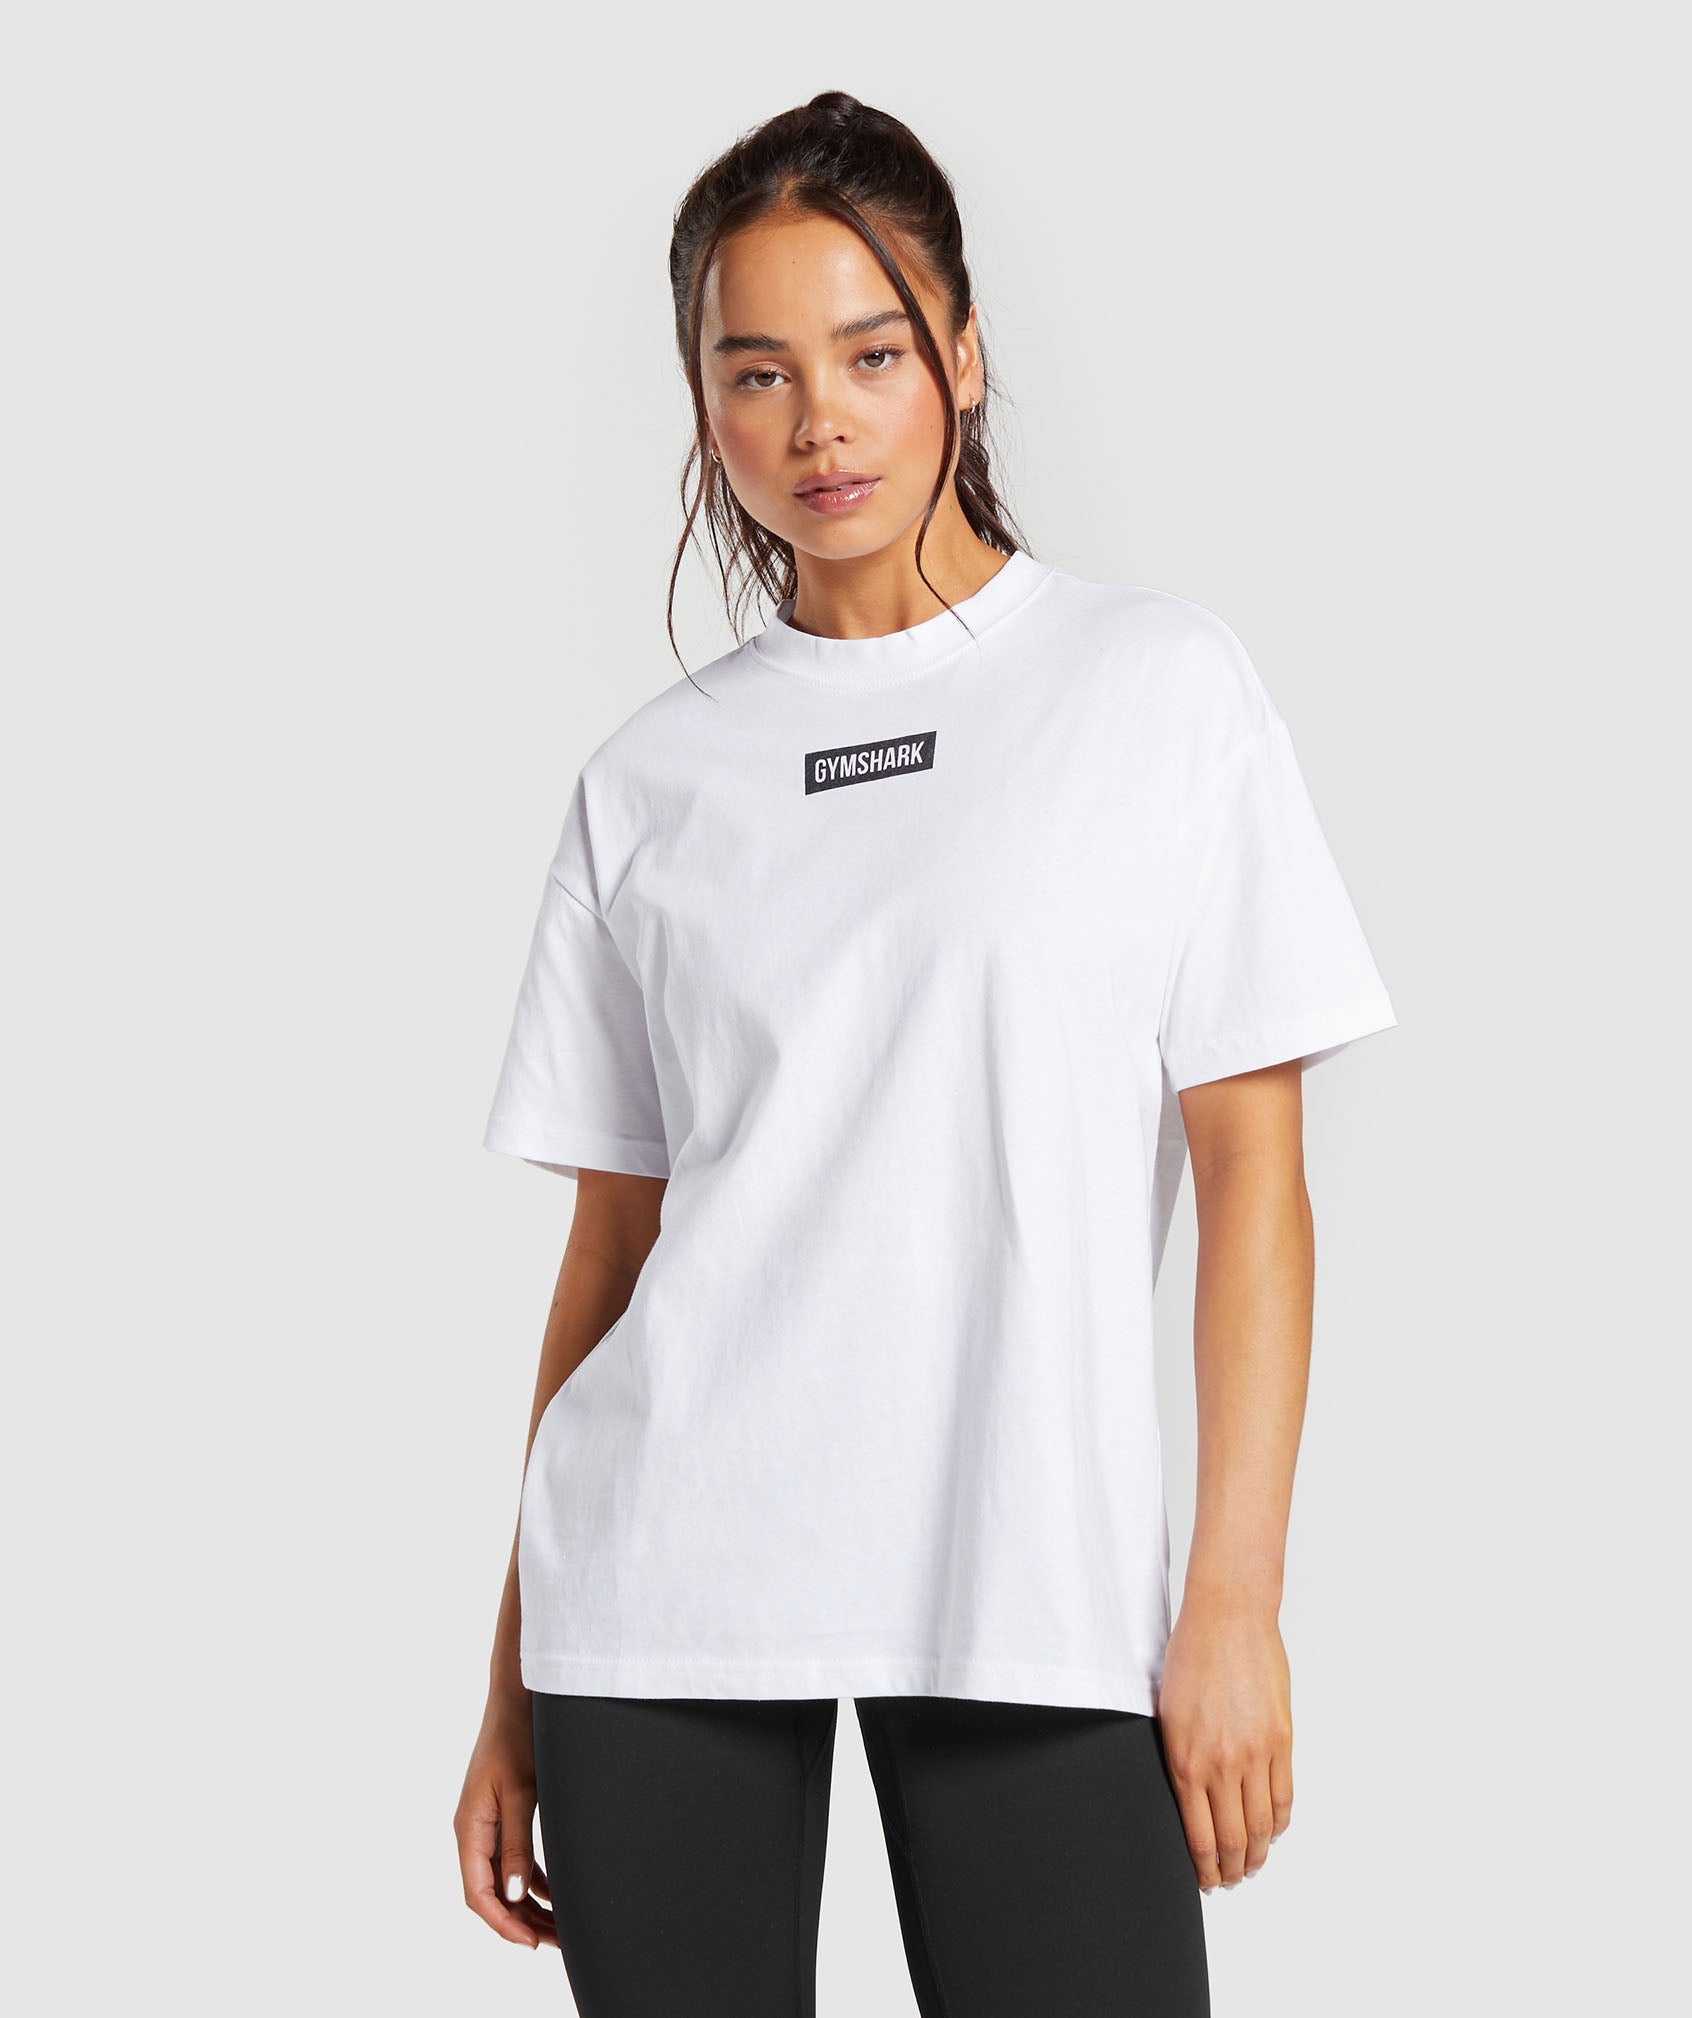 Girls Loungewear Basic Top, T-Shirt Linen, STRONG